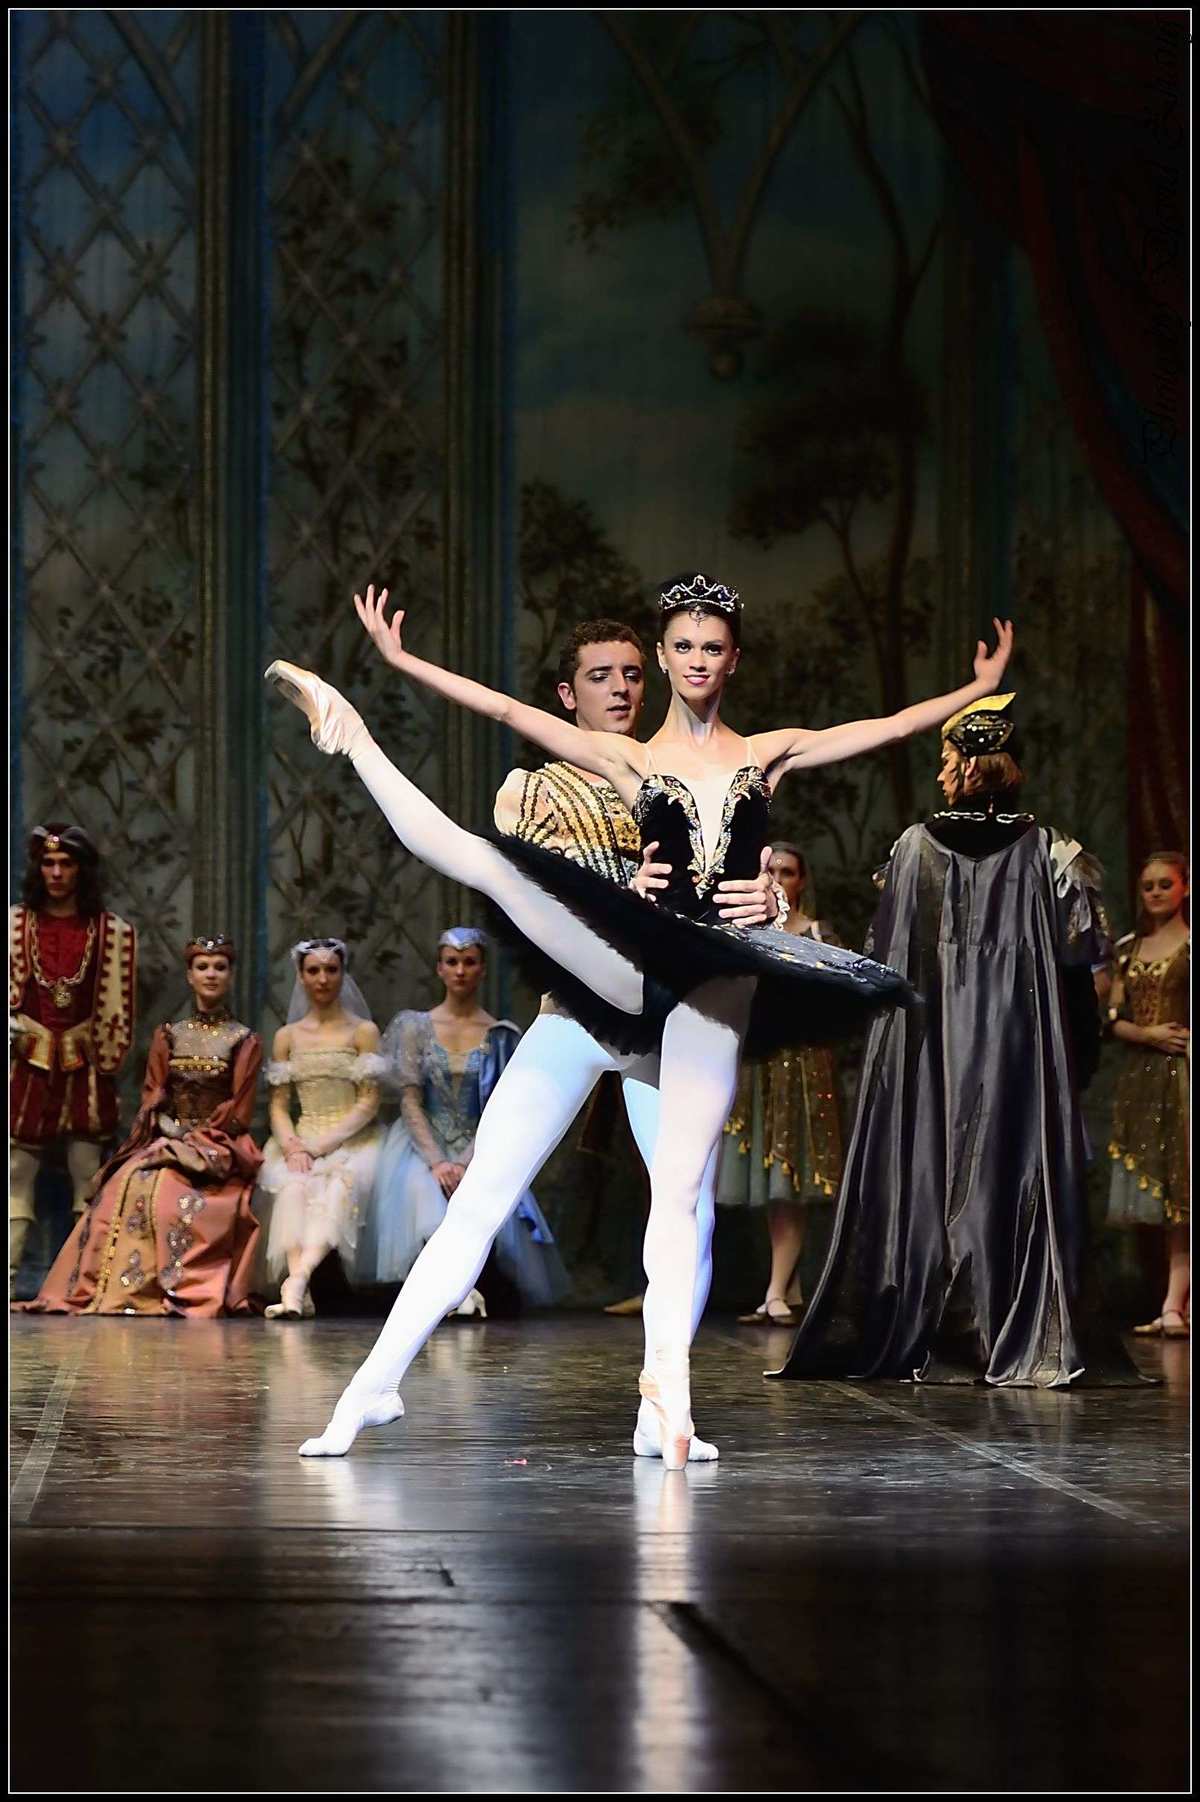 丹麦皇家芭蕾舞团女神做客天天向上是第几期_小男孩穿公主裙白裤袜_见证奇迹的时刻川普赢了